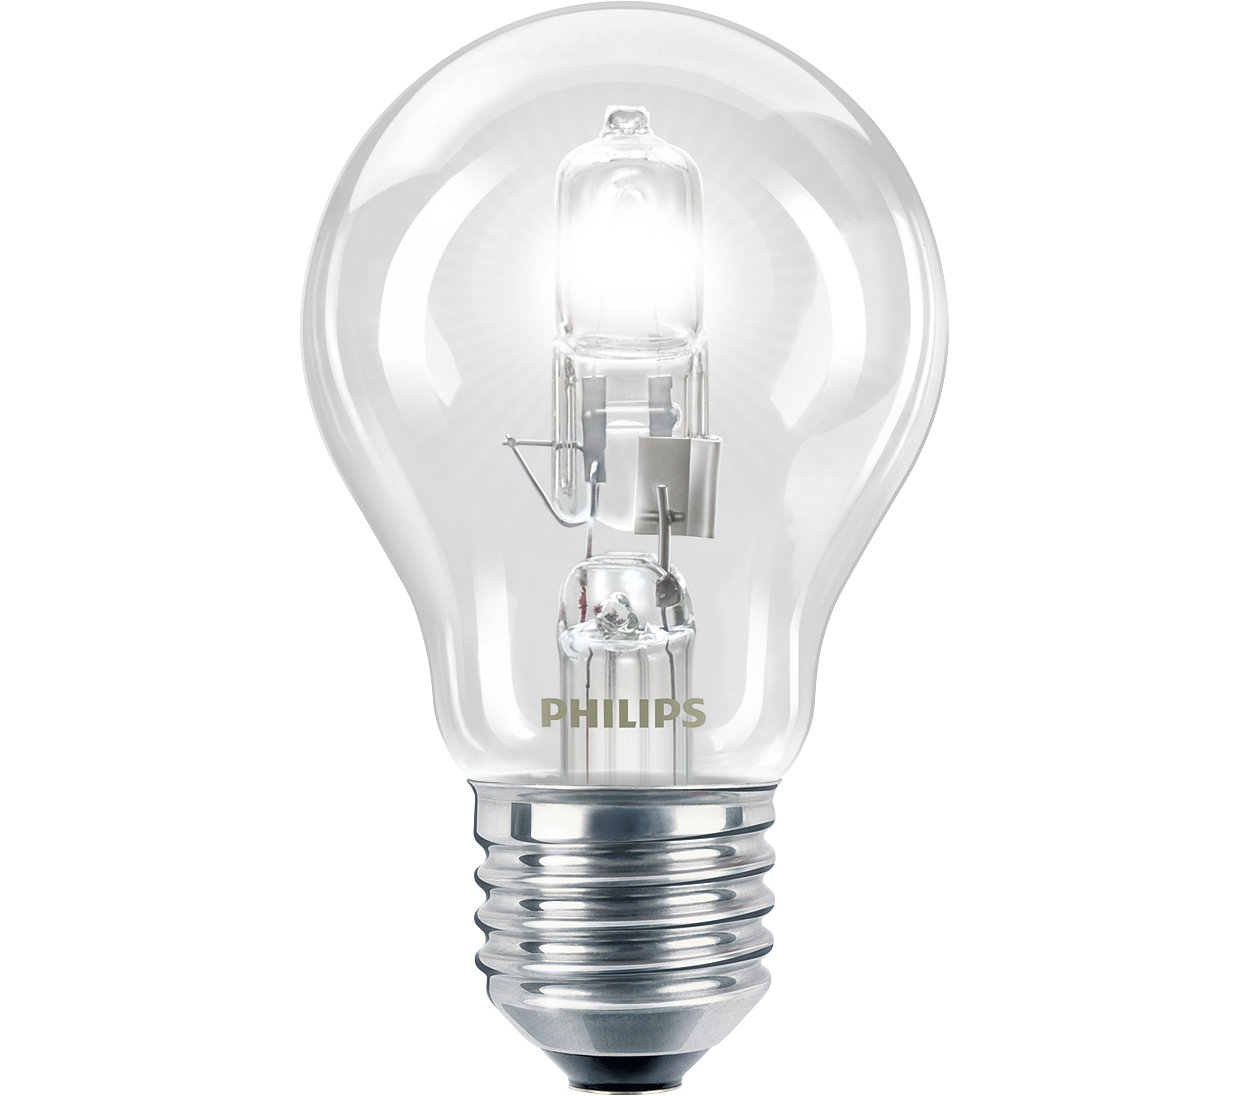 Philips Lot de 2 ampoules halogènes classiques 28 W E27 240 V P45